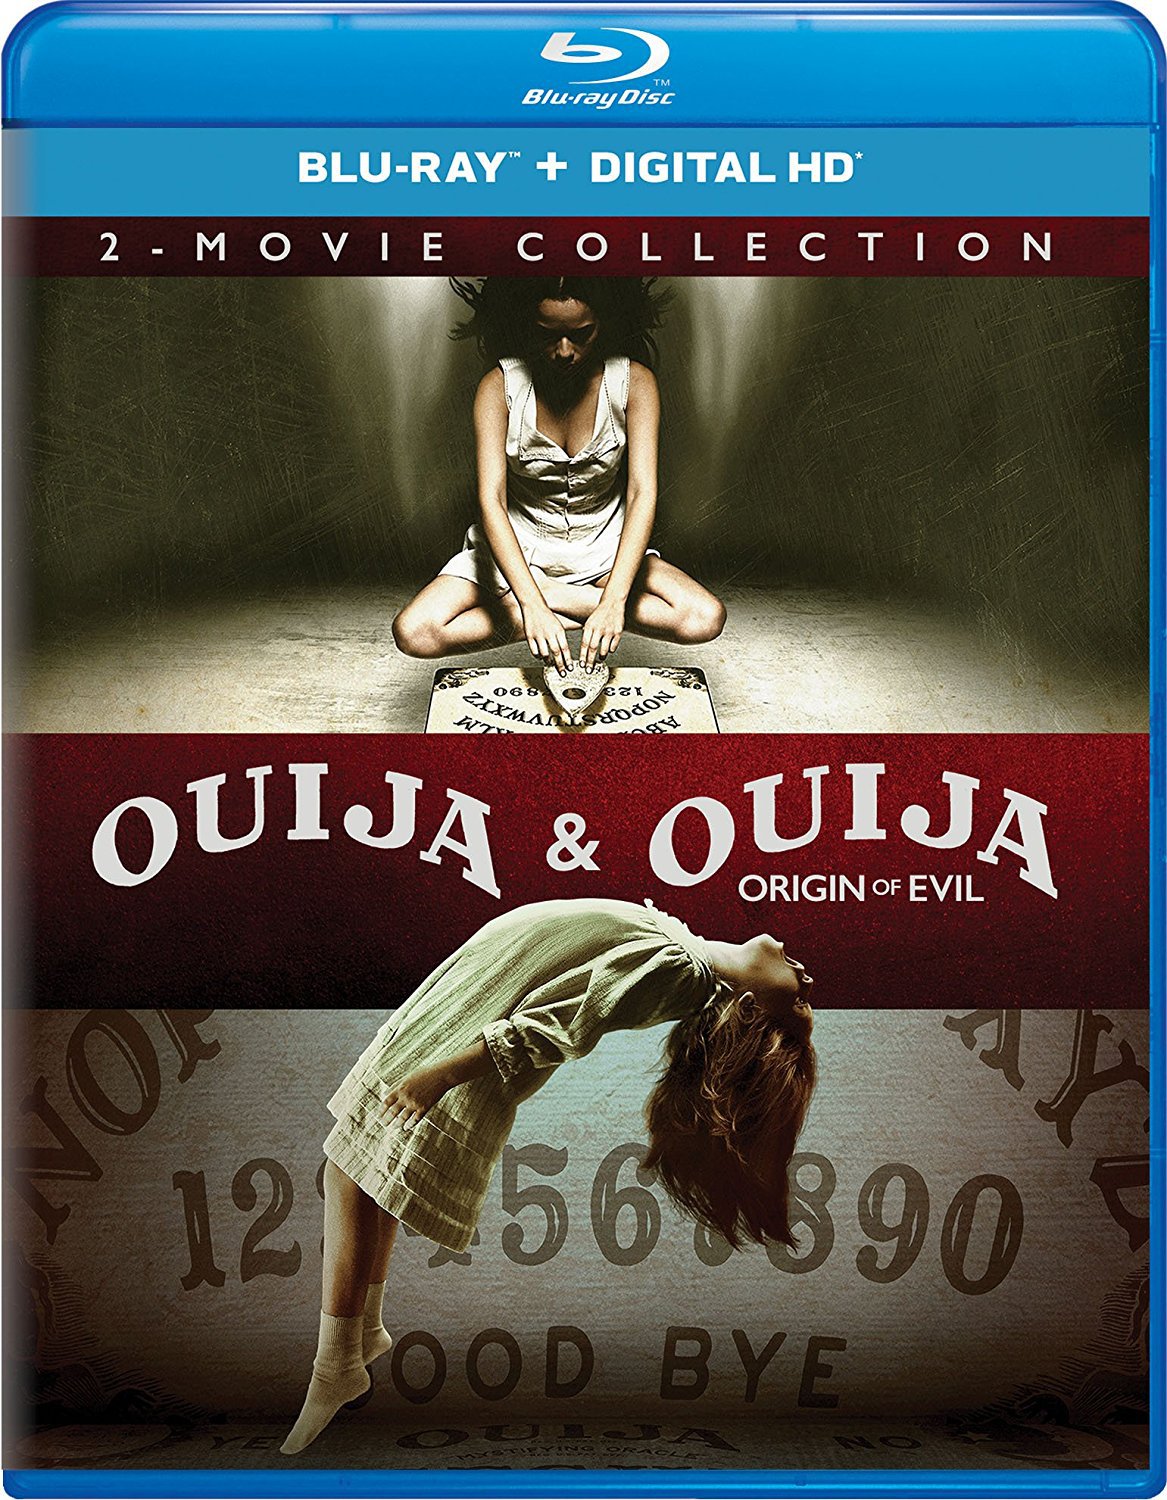 Ouija & Ouija: Origin of Evil